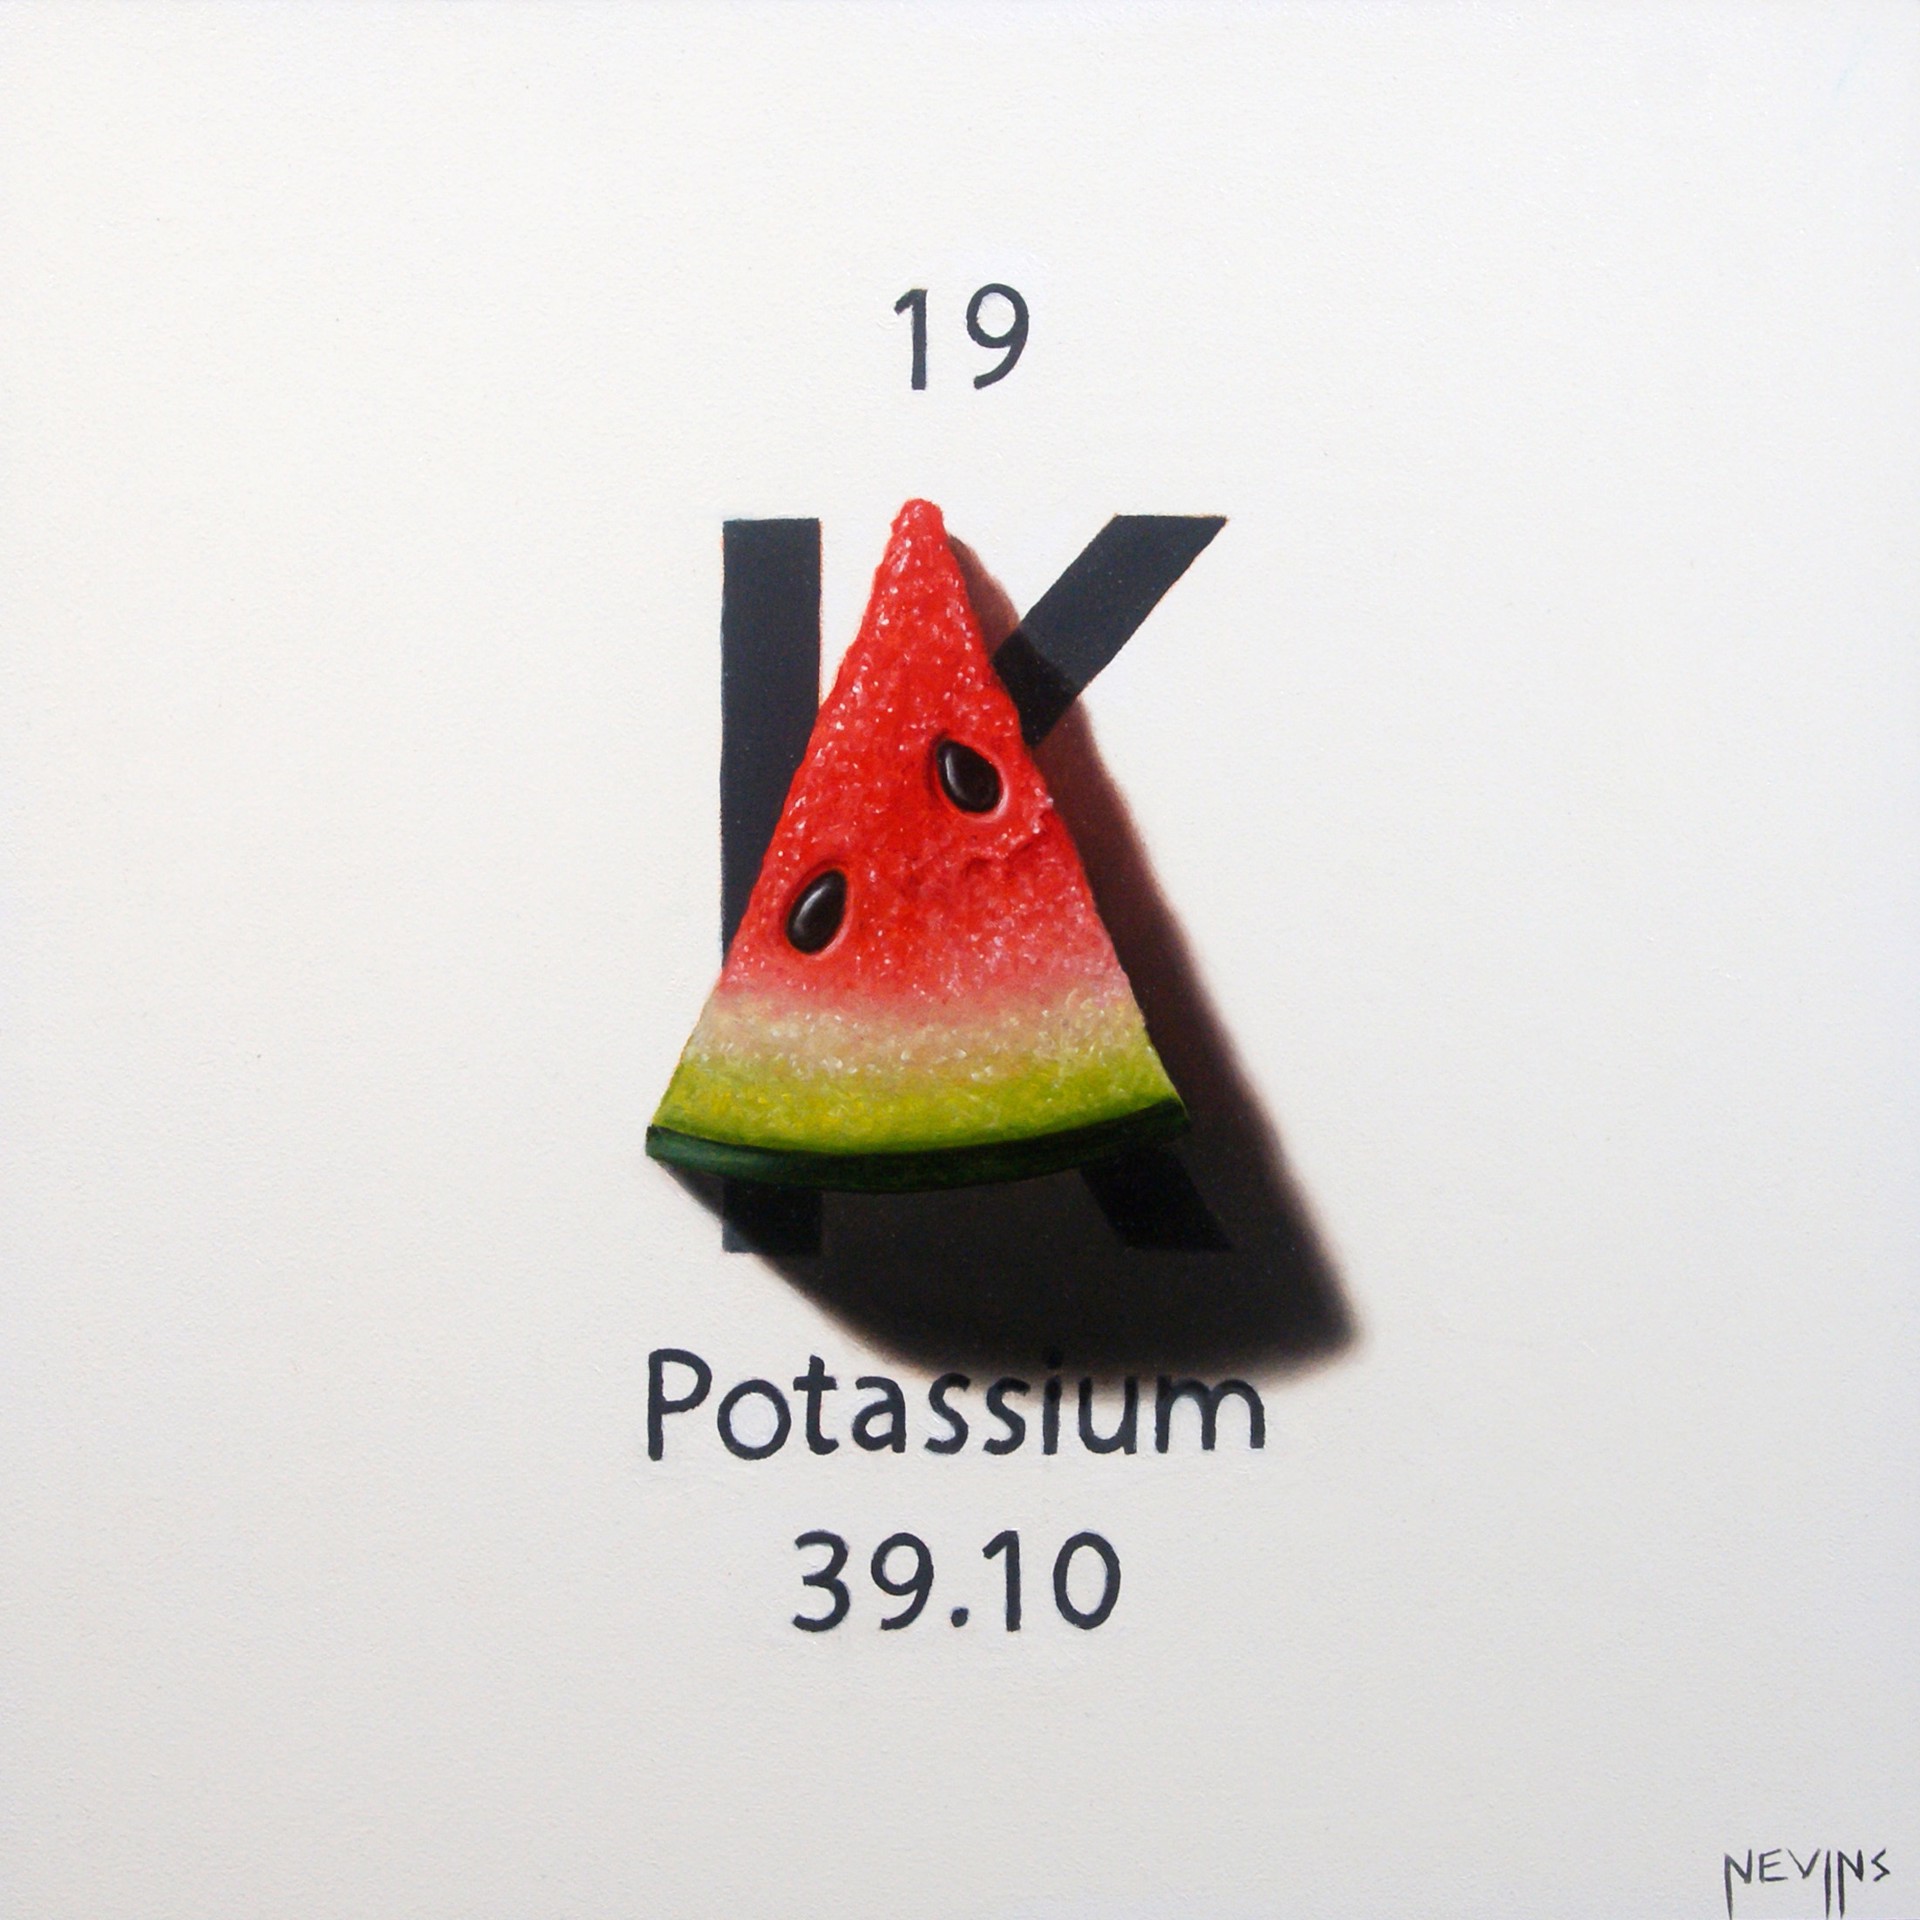 Potassium by Patrick Nevins